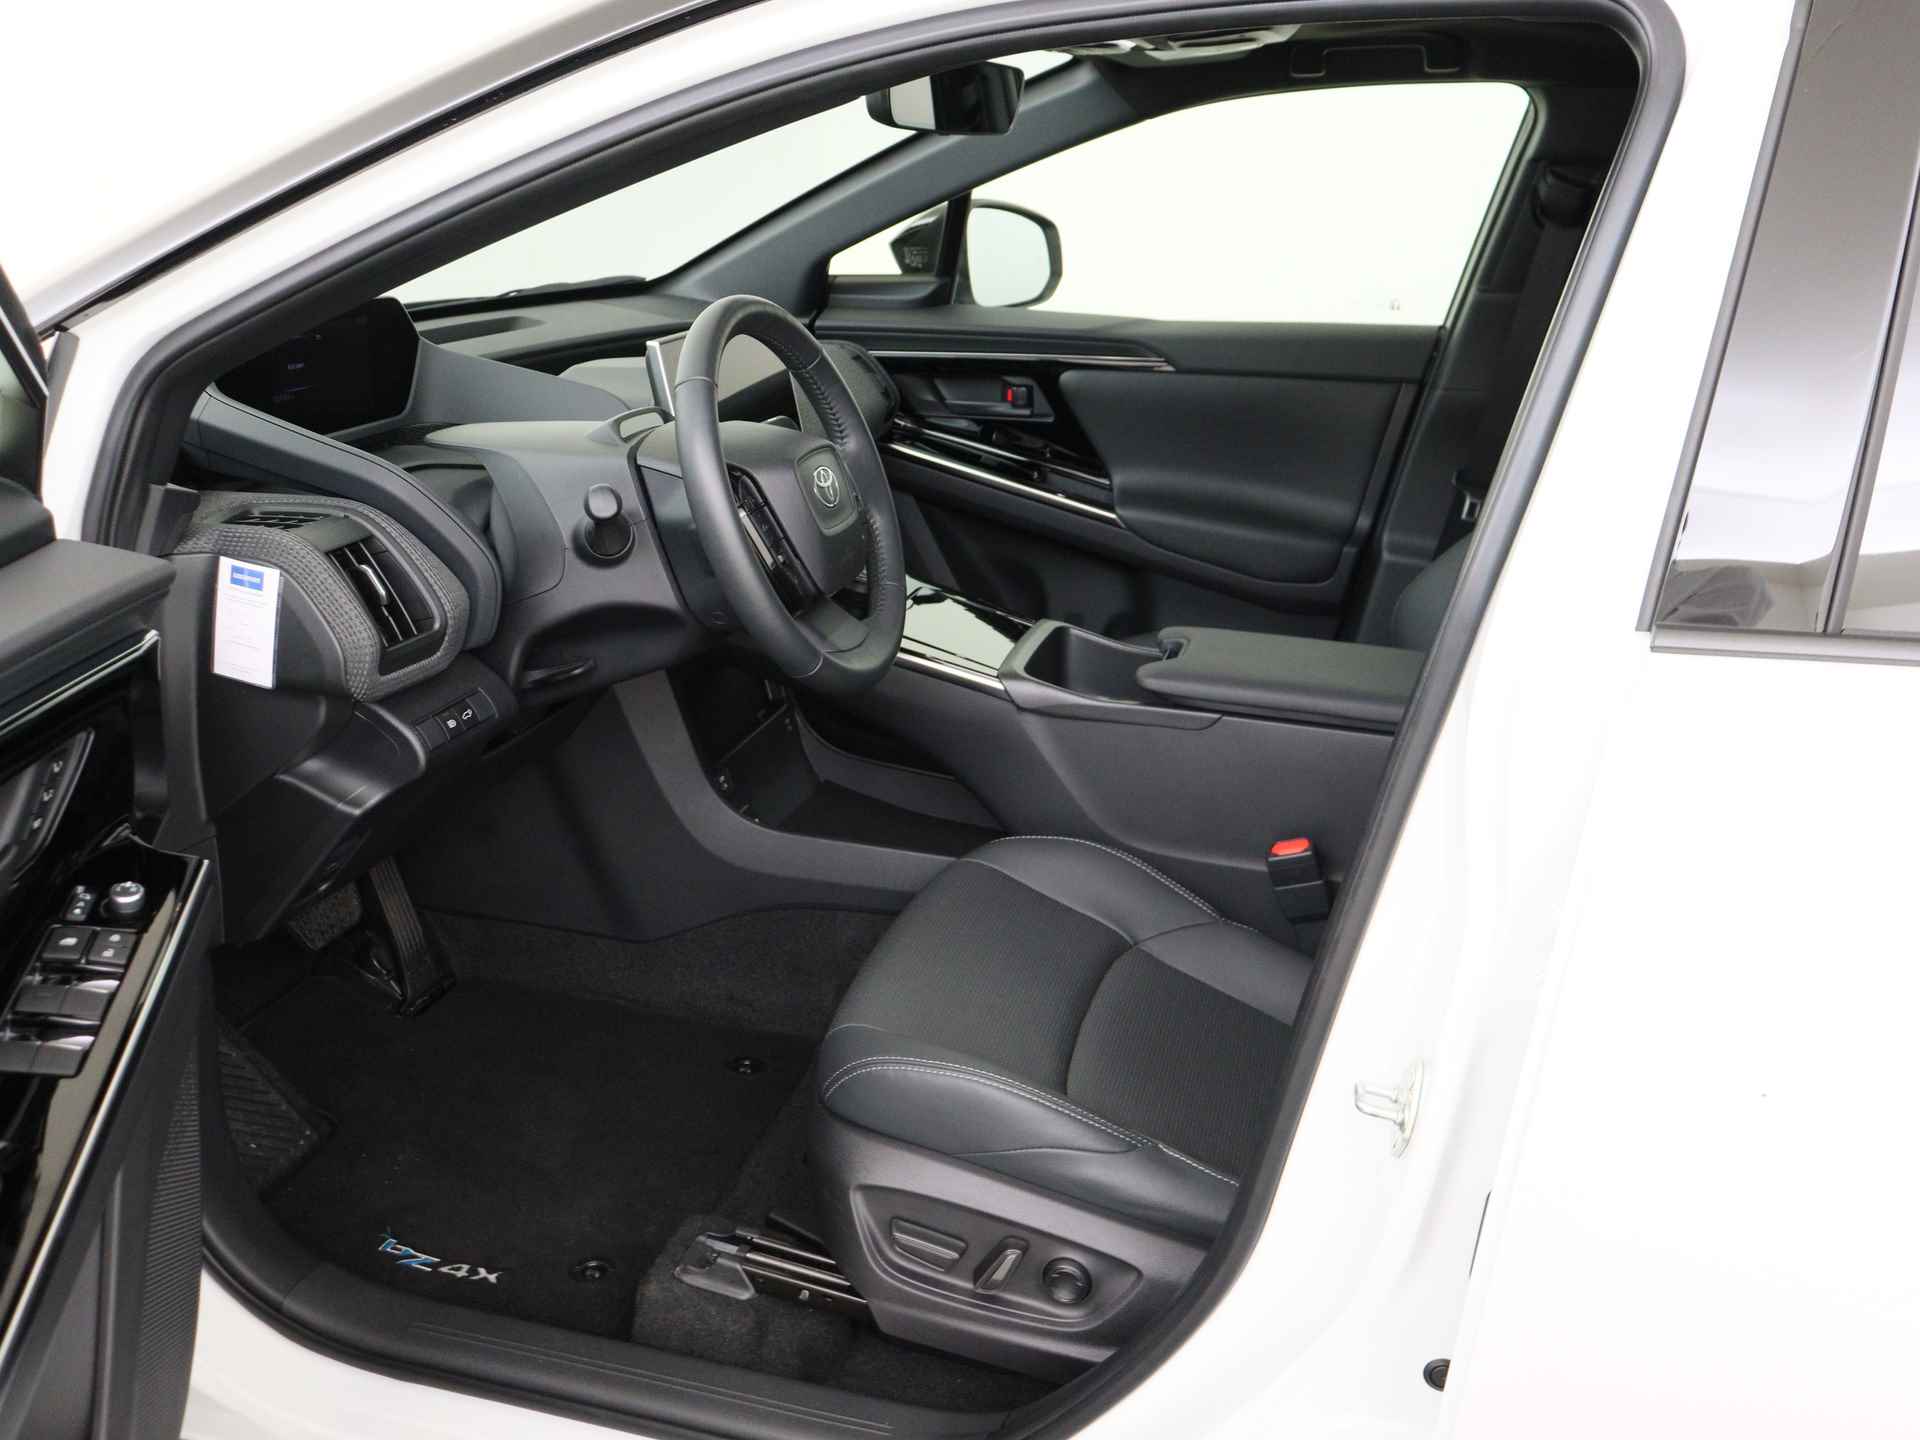 Toyota Bz4x Launch Edition Premium Bi-Tone uitvoering | Navigatie | Stoel&stuur verwarming | My T app | Panoramadak | Wegenbelasting vrij | Subsidie €2000,- aanvraag mogelijk. - 15/48